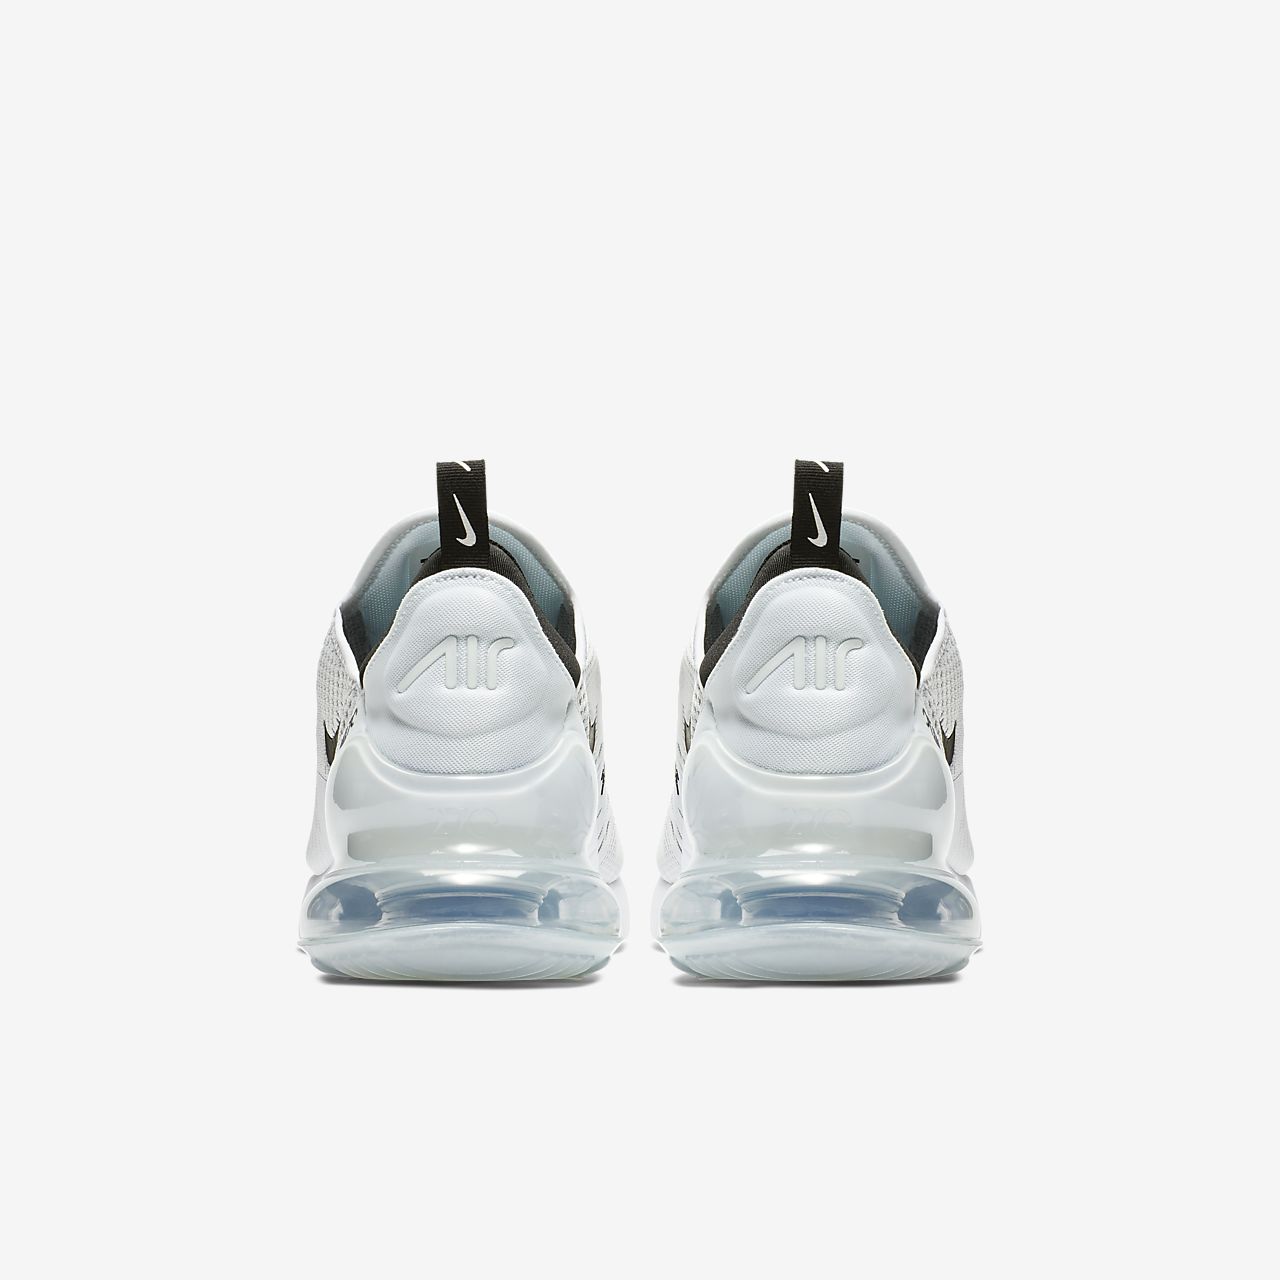 Nike Air Max 270 - Sneakers - Hvide/Sort | DK-44204